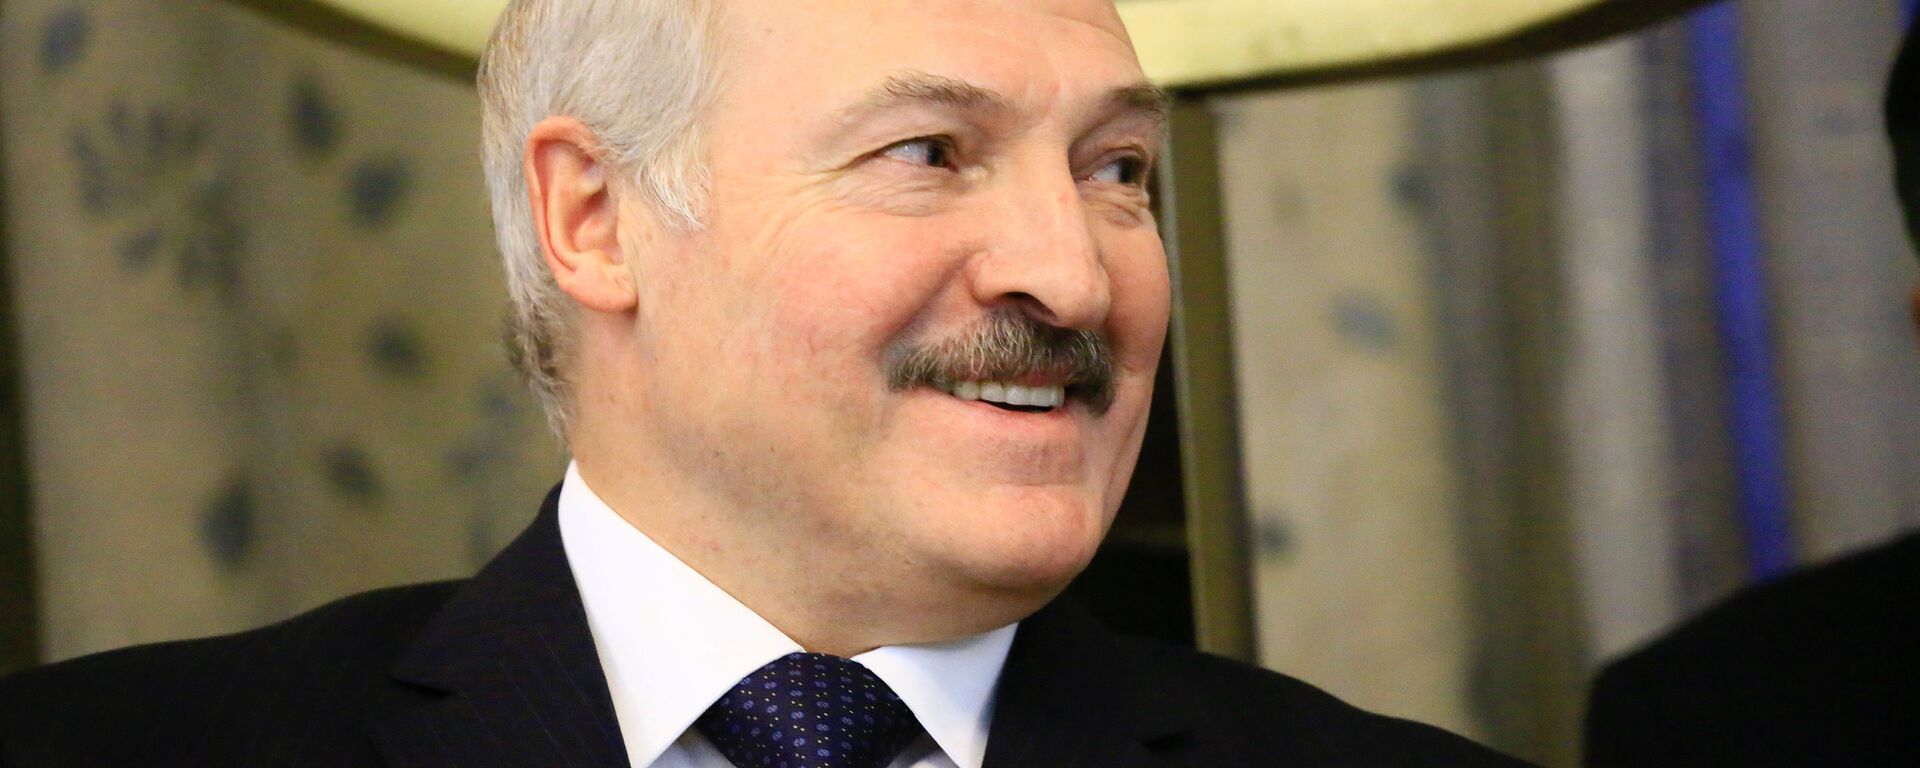 Aleksandr Lukashenko vo vremya vizita v Sudan - Sputnik Oʻzbekiston, 1920, 06.09.2019